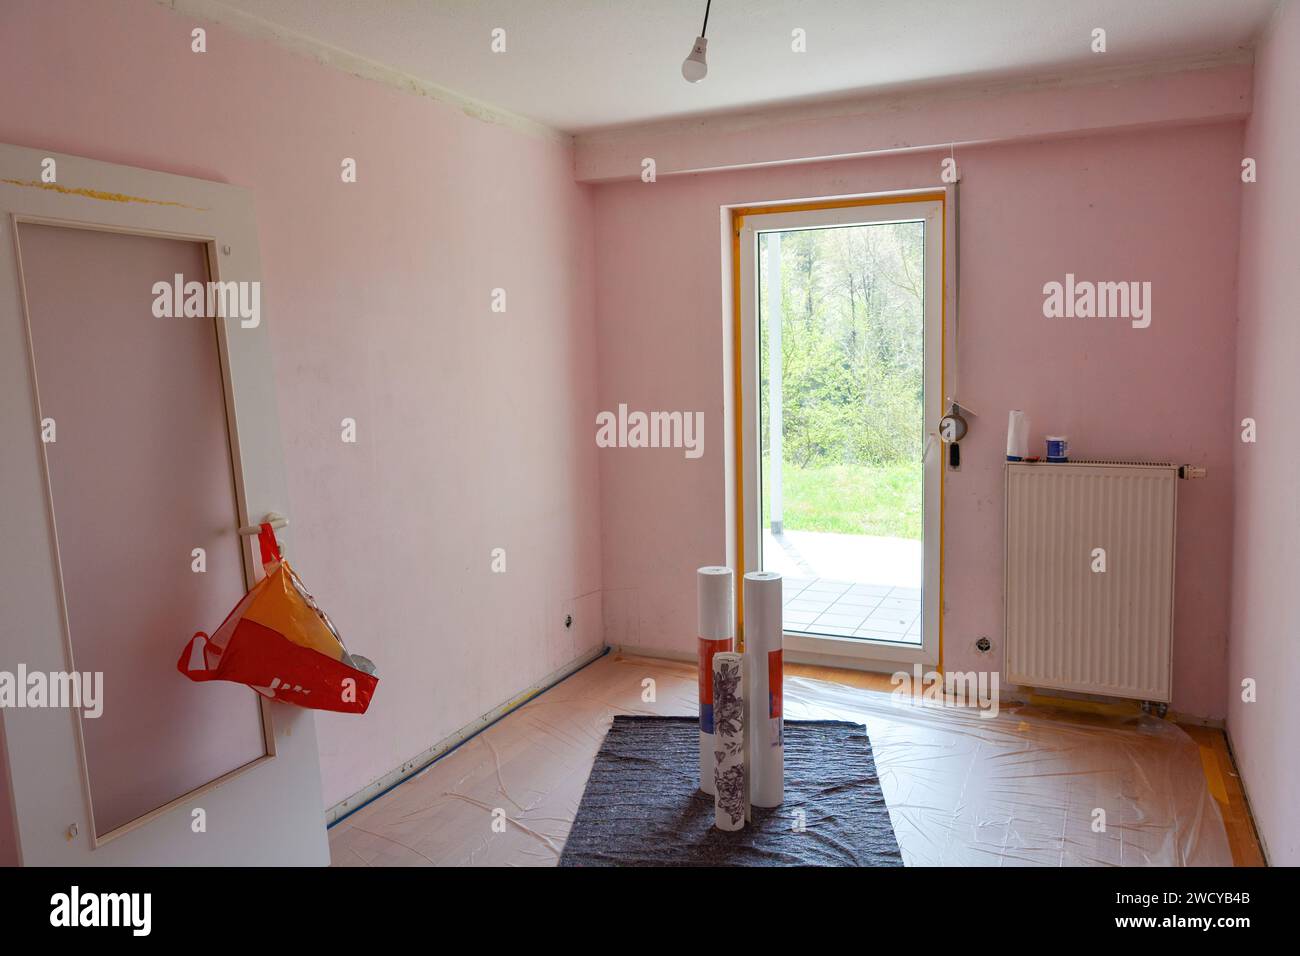 Pareti rosa con soffitto di un appartamento durante i lavori di ristrutturazione, porte sospese a parete, con finestra in camera Foto Stock